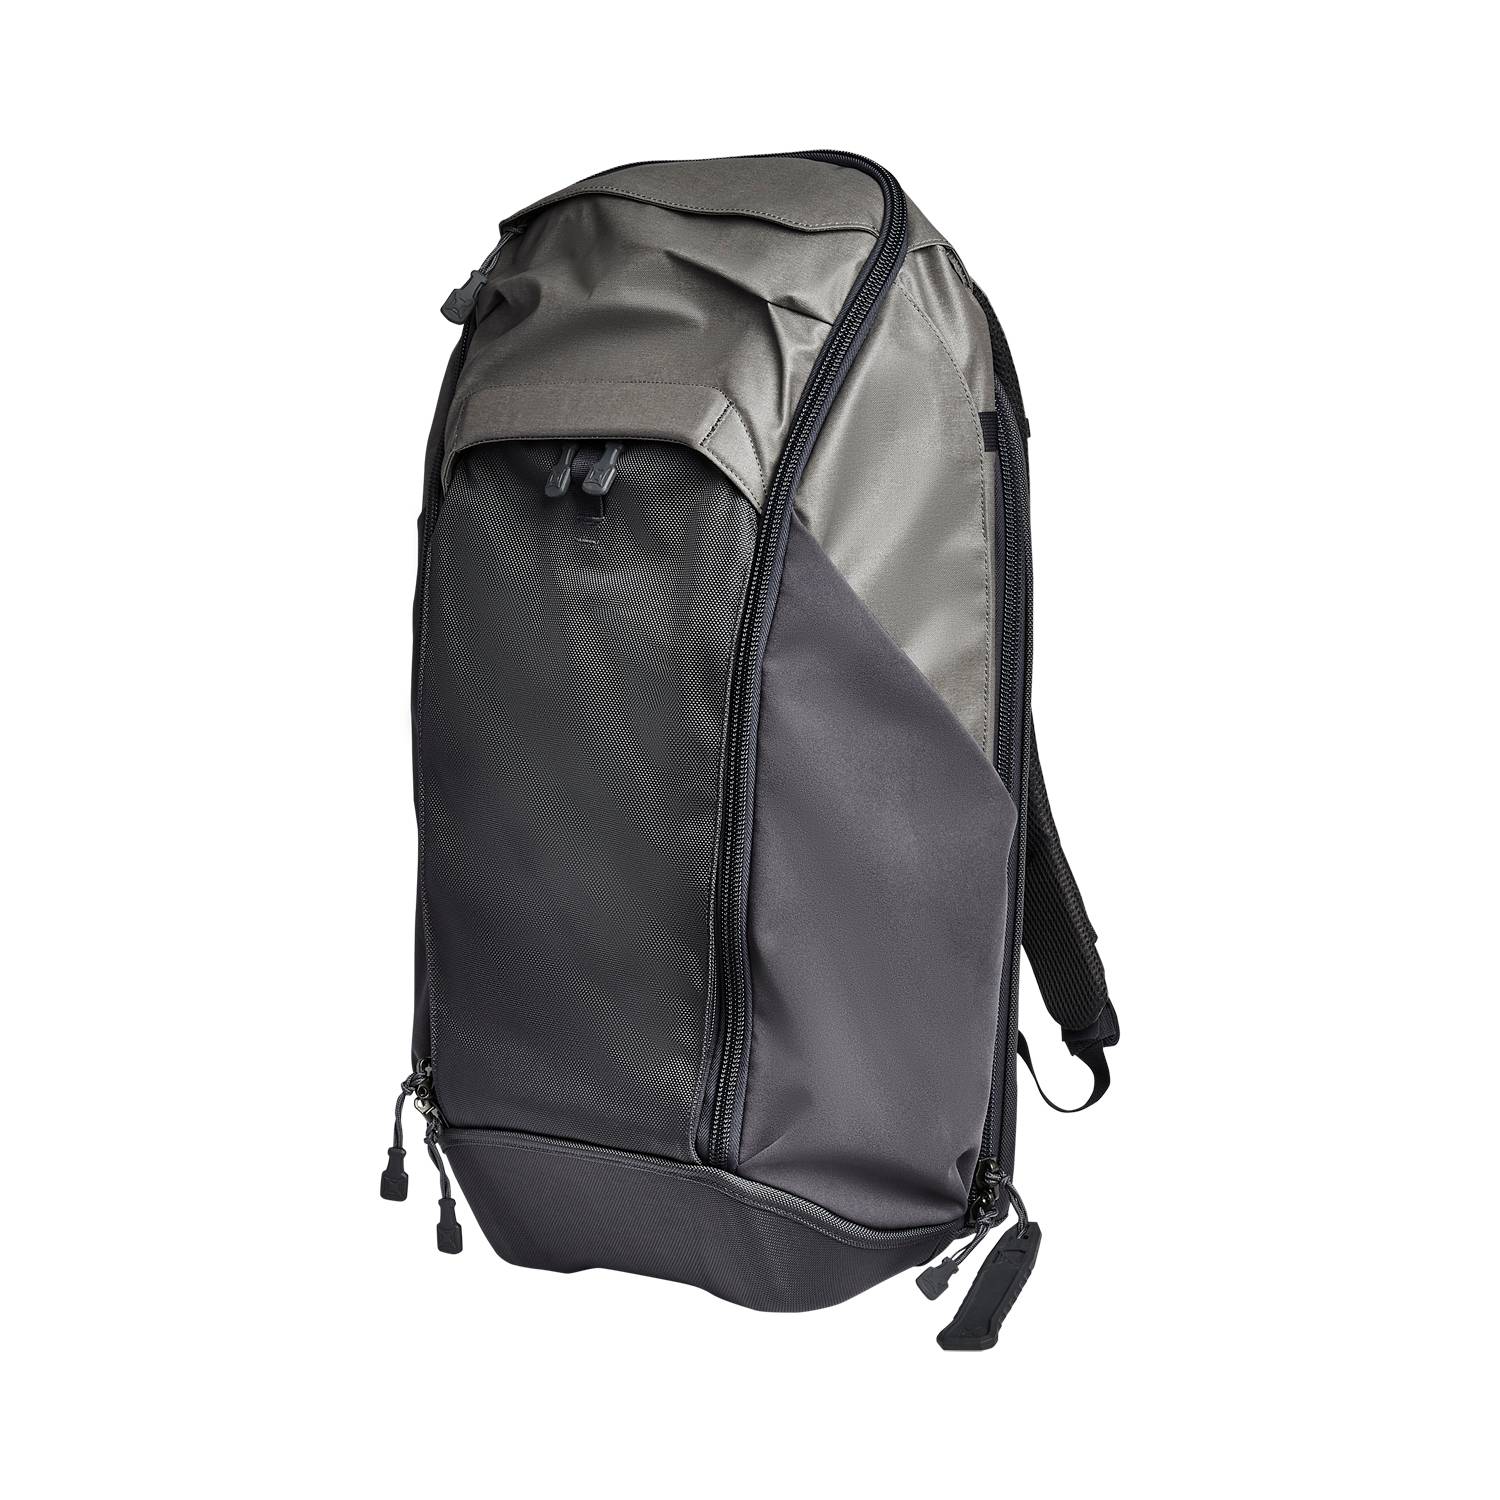 Vertx Basecamp Backpack (Gen 3) - 30L | Vertx Bags | Galls